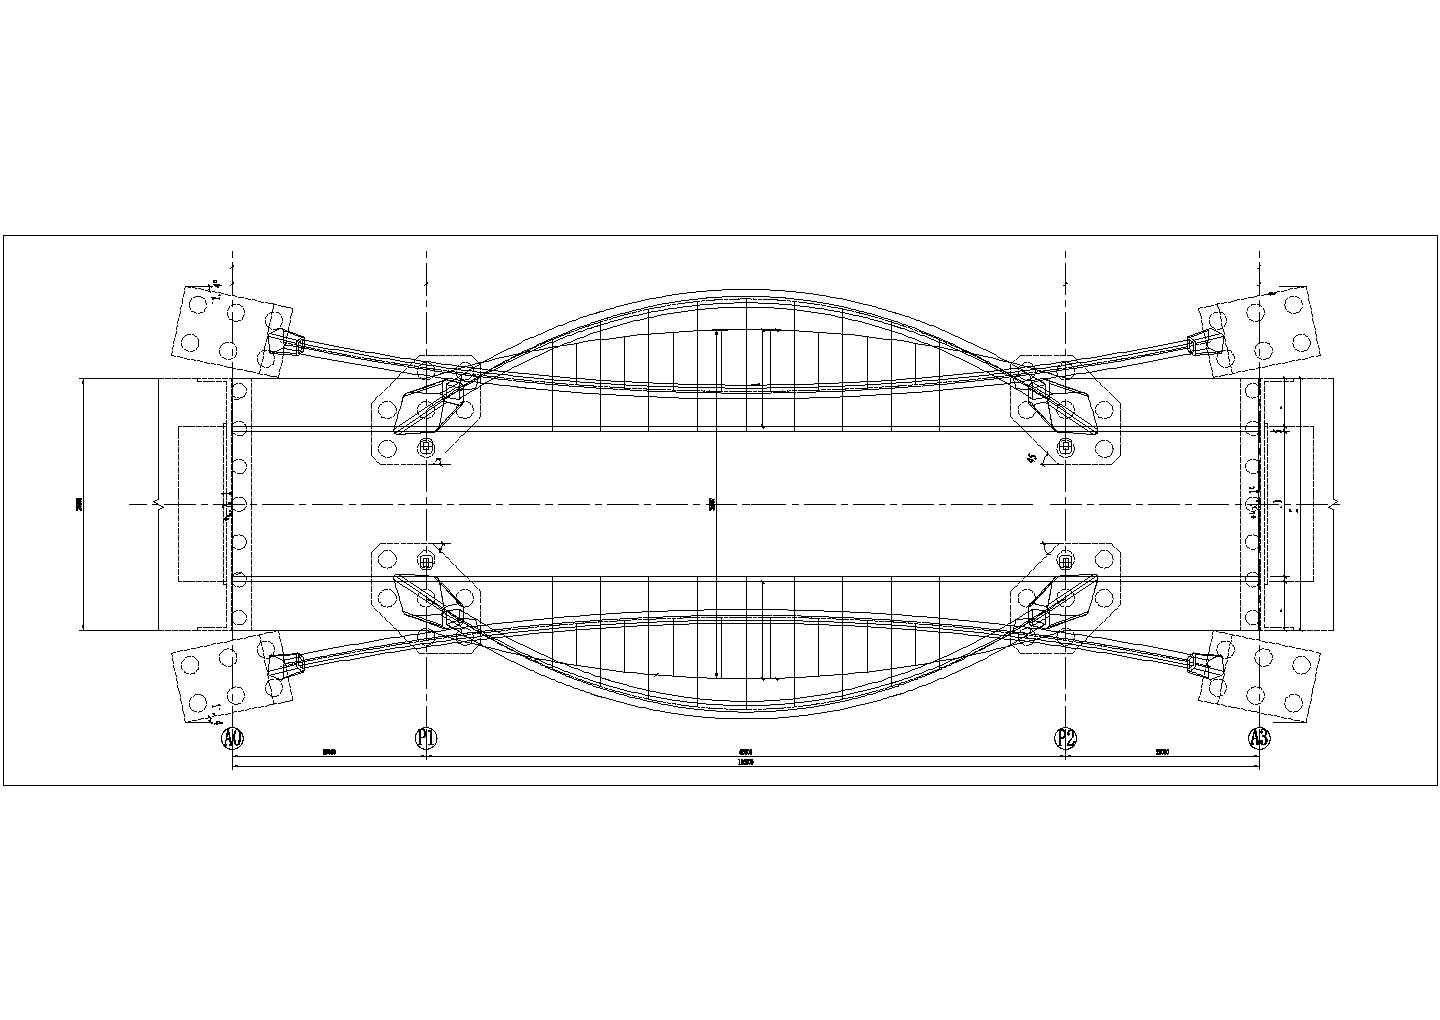 景观桥工程钢结构制作与安装方案施工图